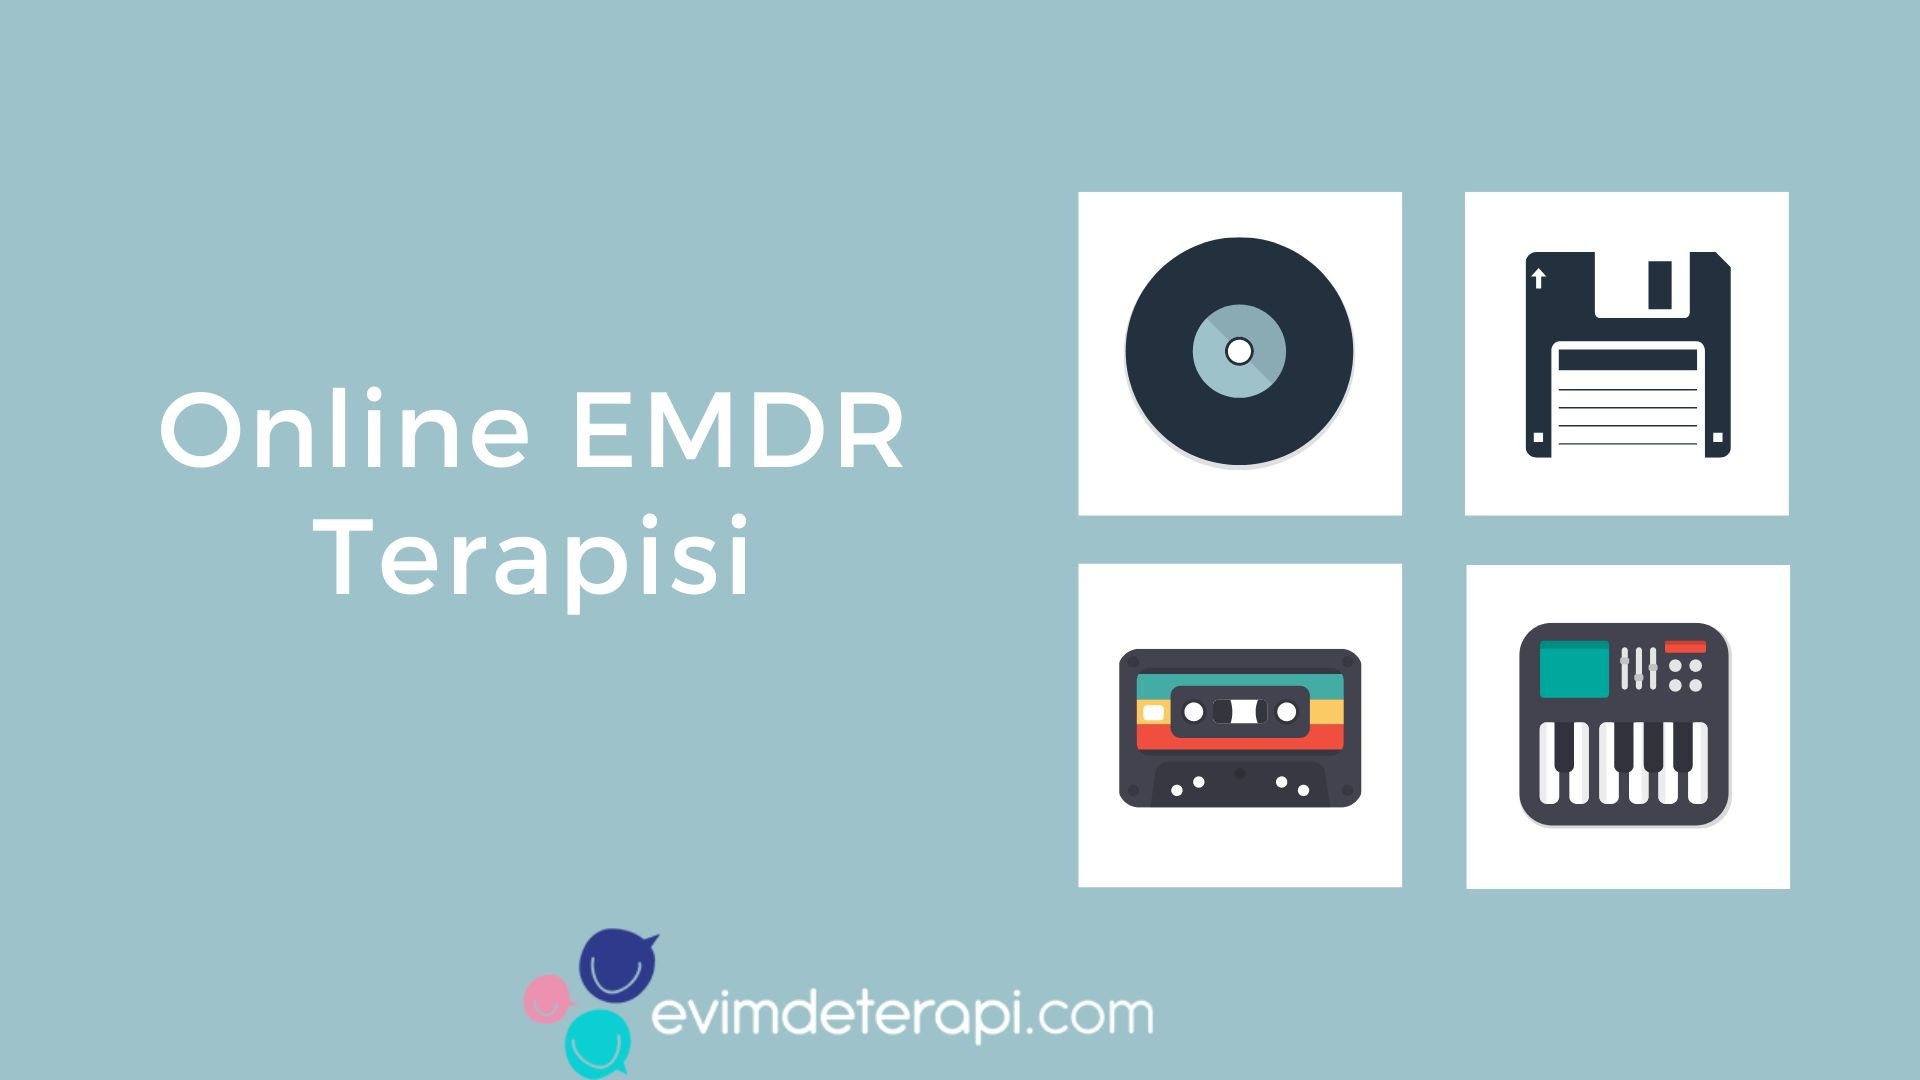 Online EMDR Terapisi